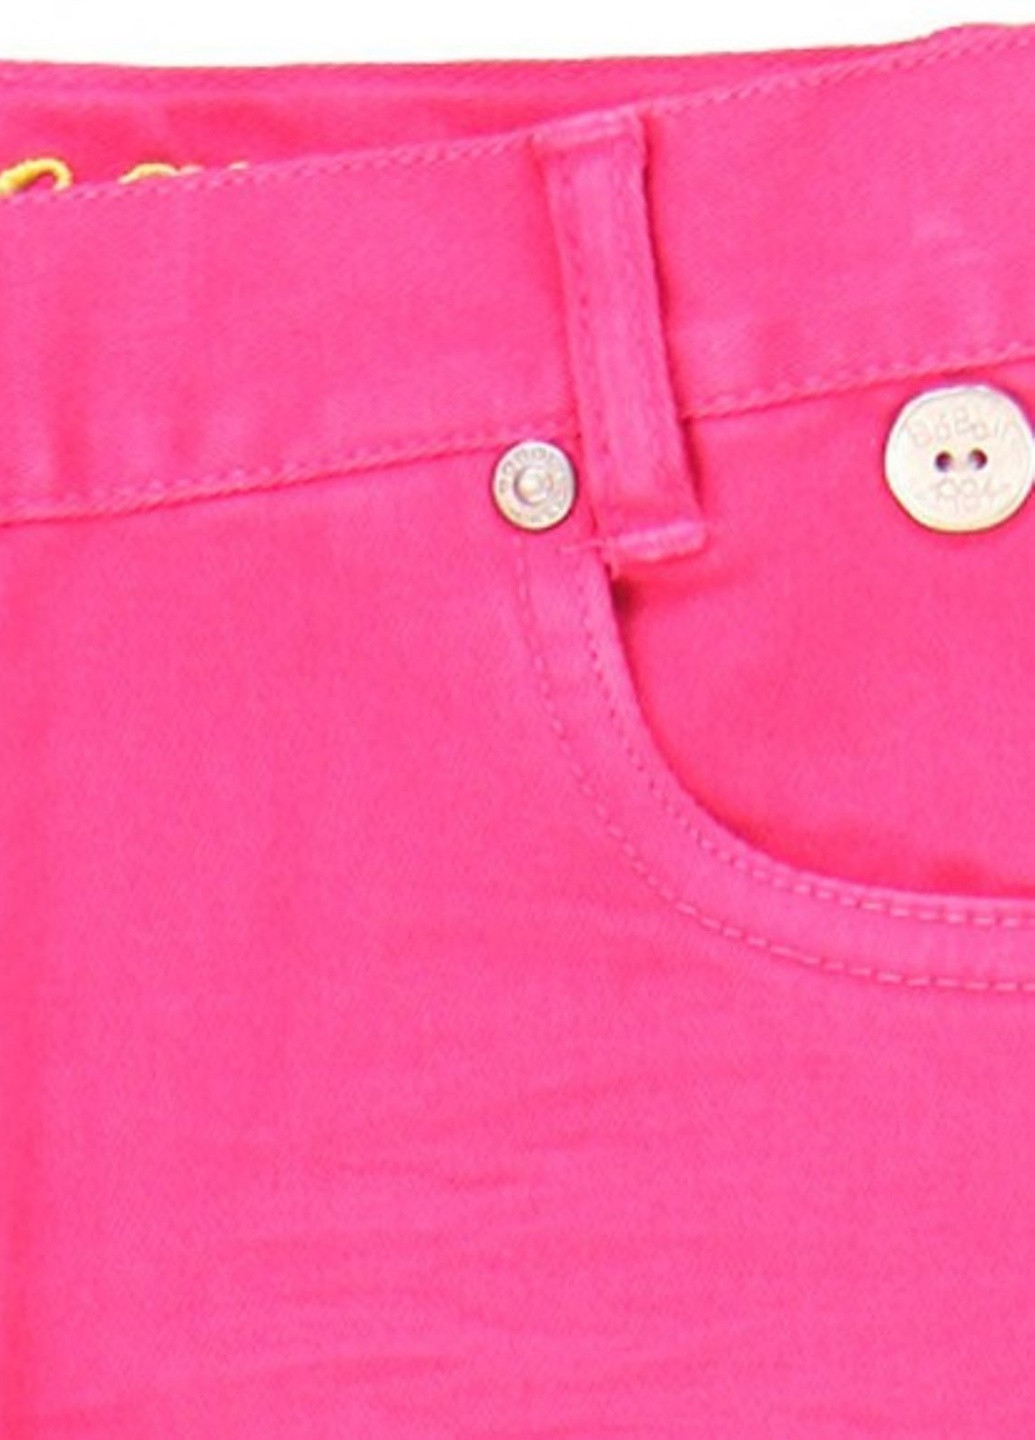 Розовые джинсы Boboli